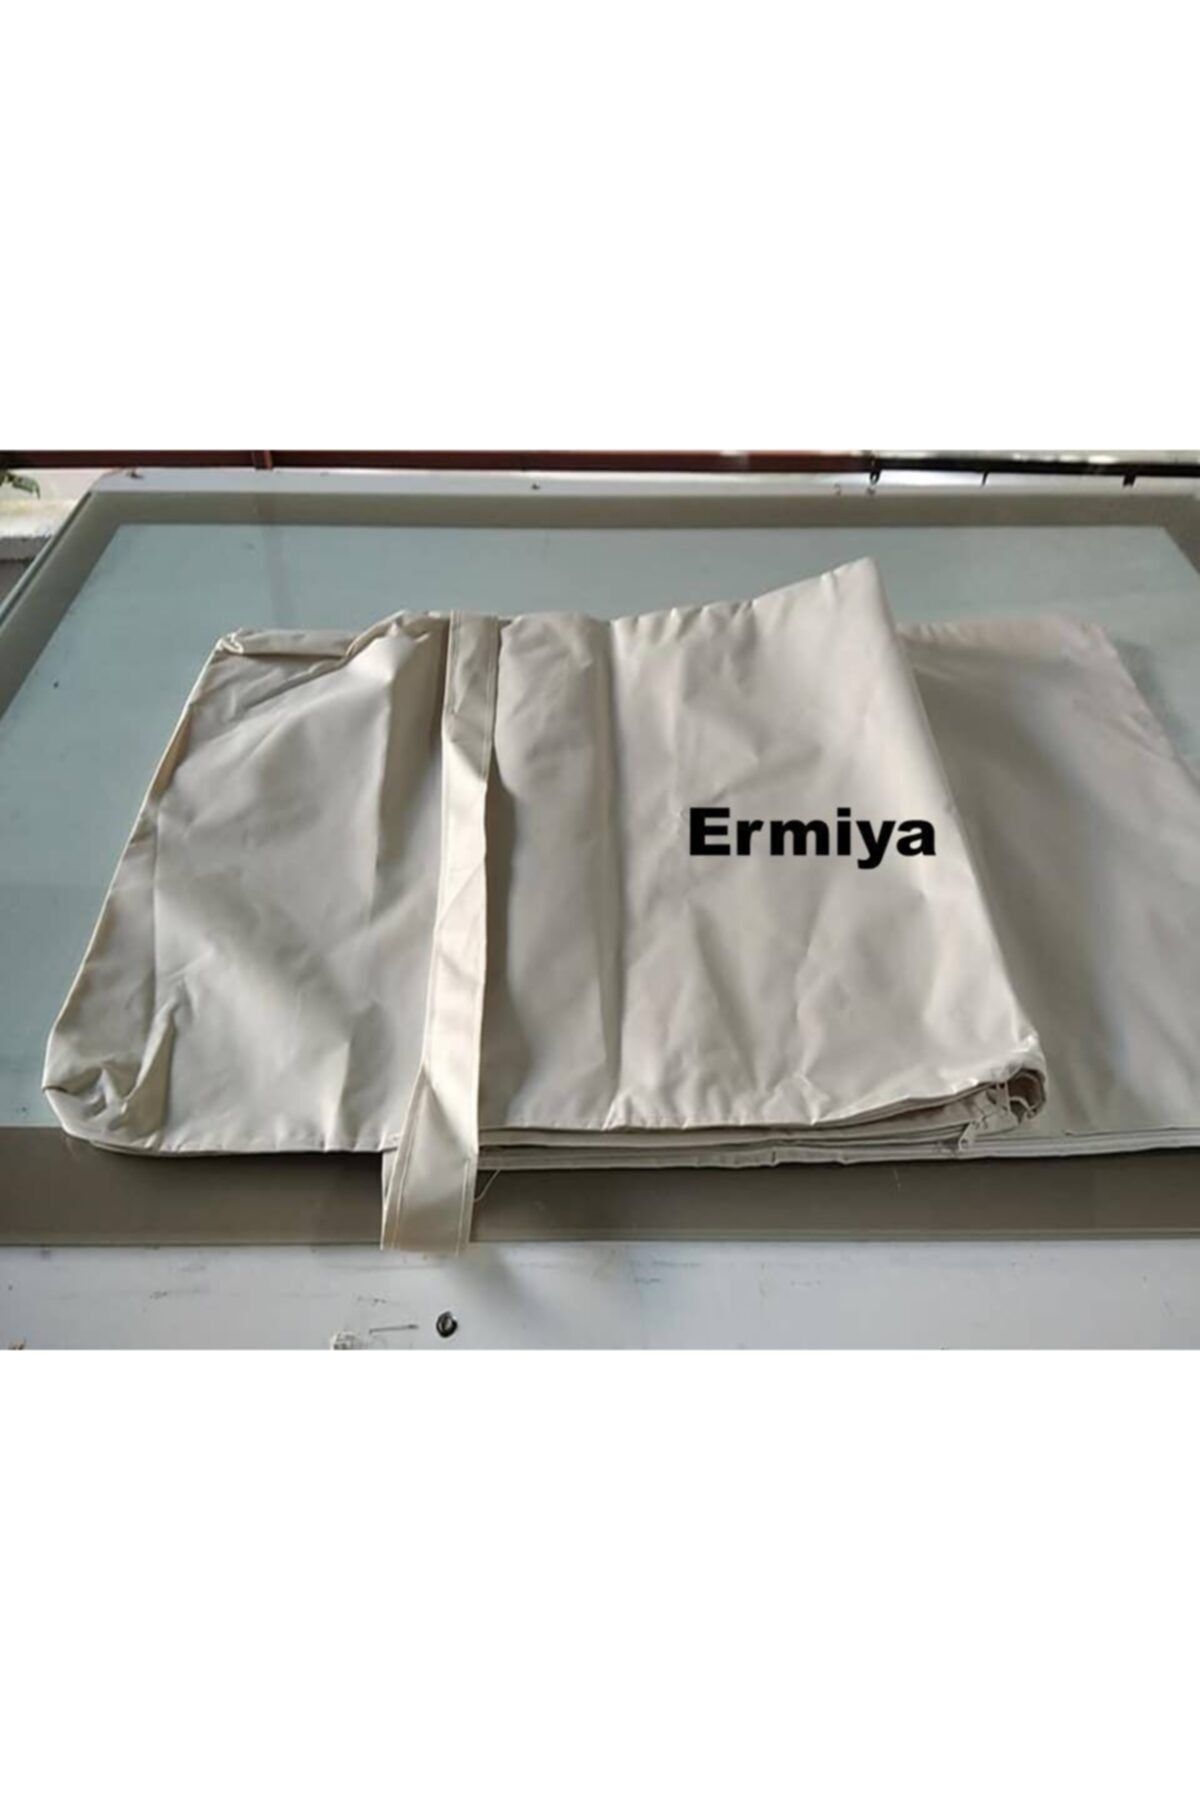 Dogant Ermiya Şezlong Minderi Kılıfı Krem Fermuarlı Polyester Impertex Kumaş Süngersiz